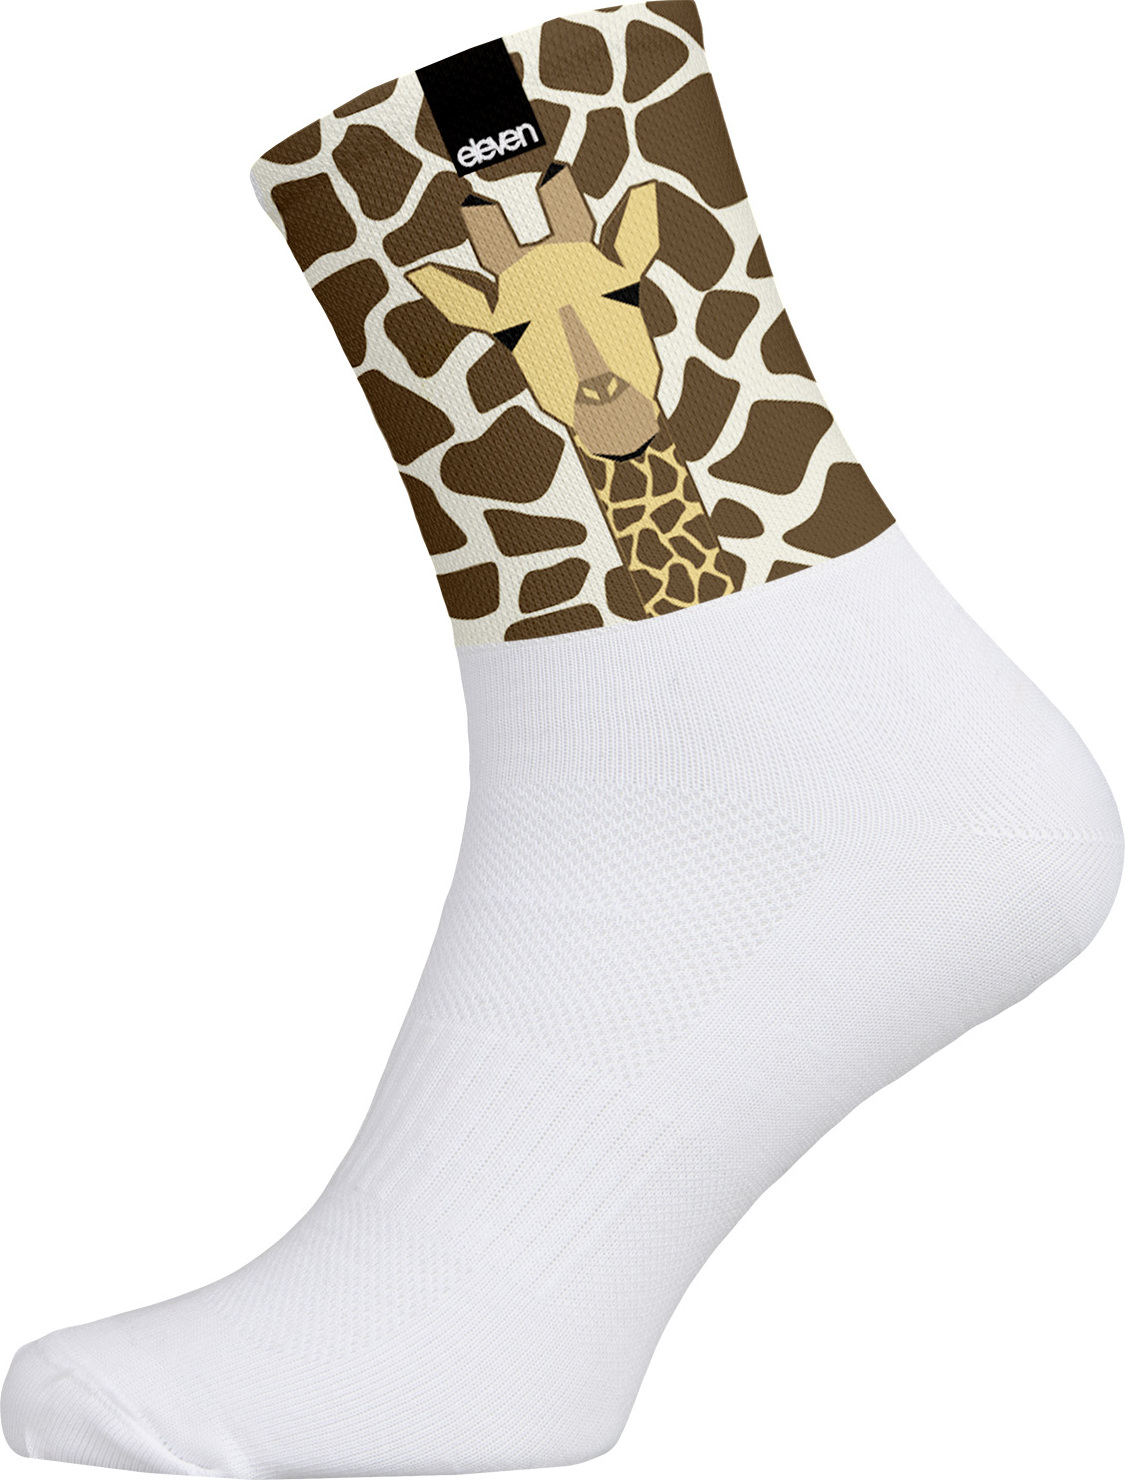 Ponožky ELEVEN Cuba Giraffe Velikost: L (42-44)